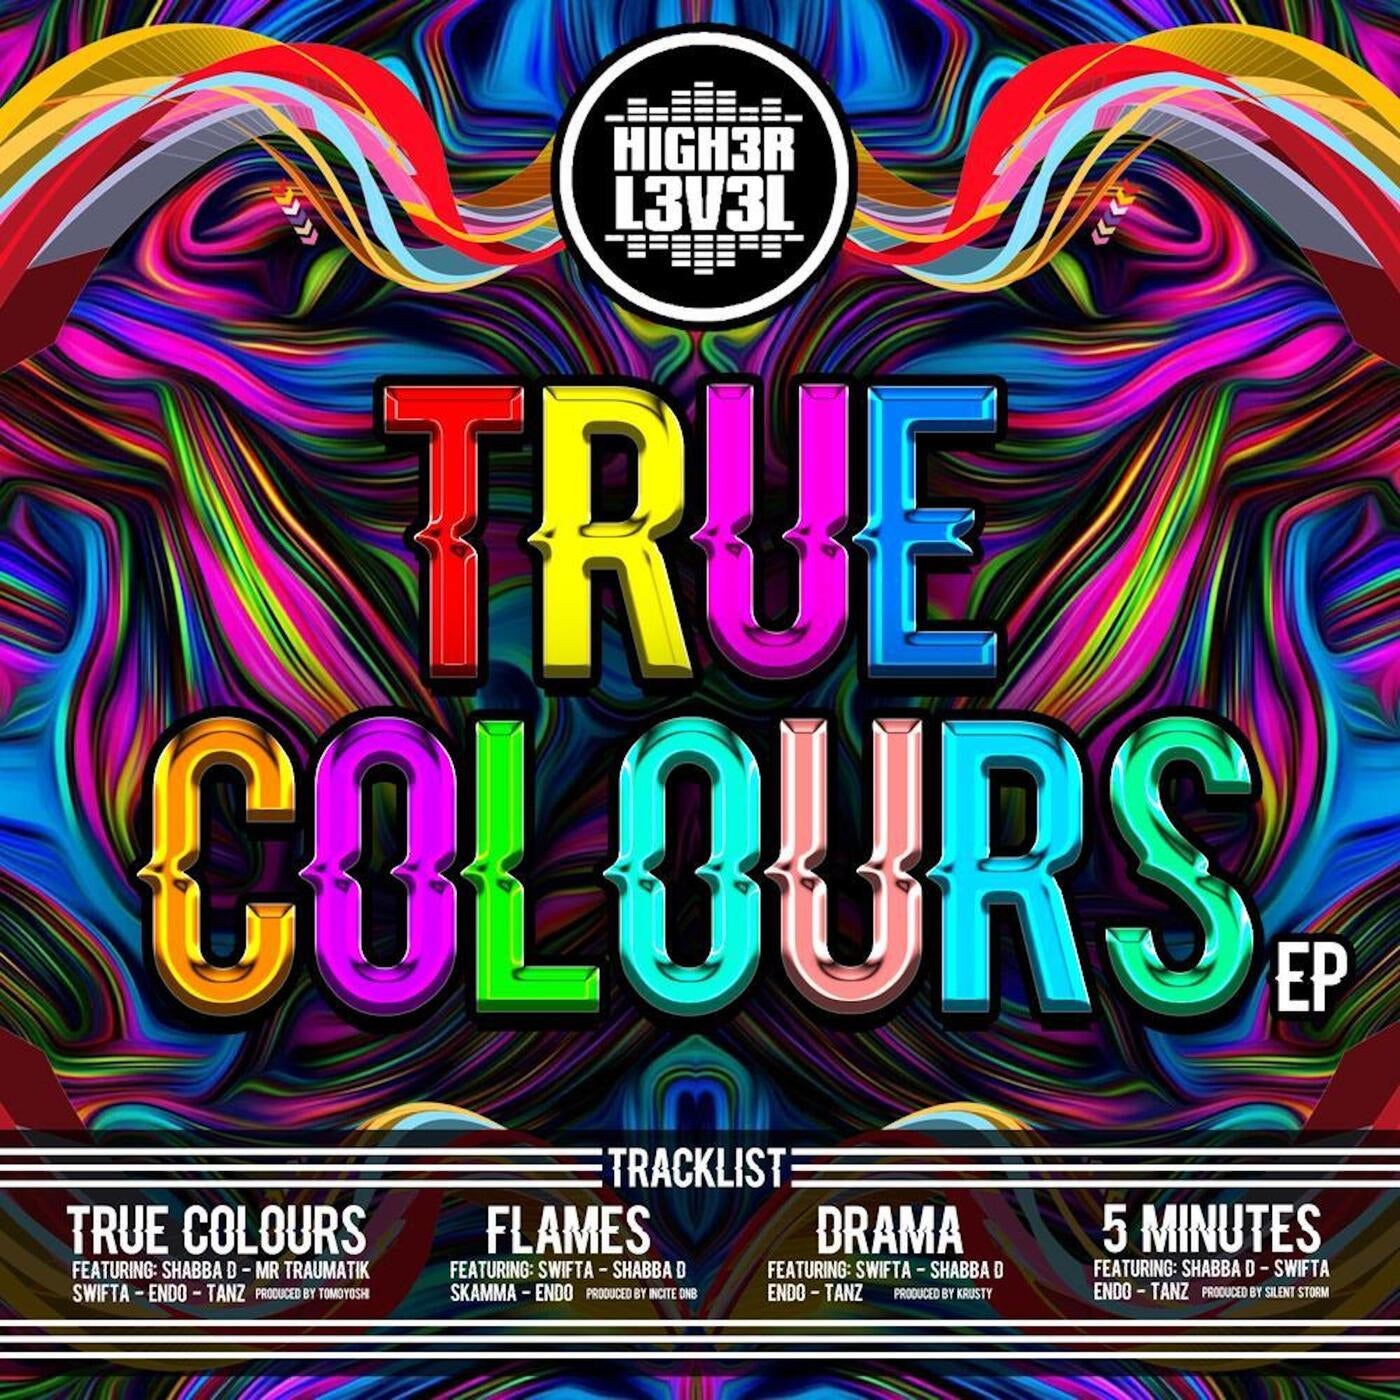 True Colours EP